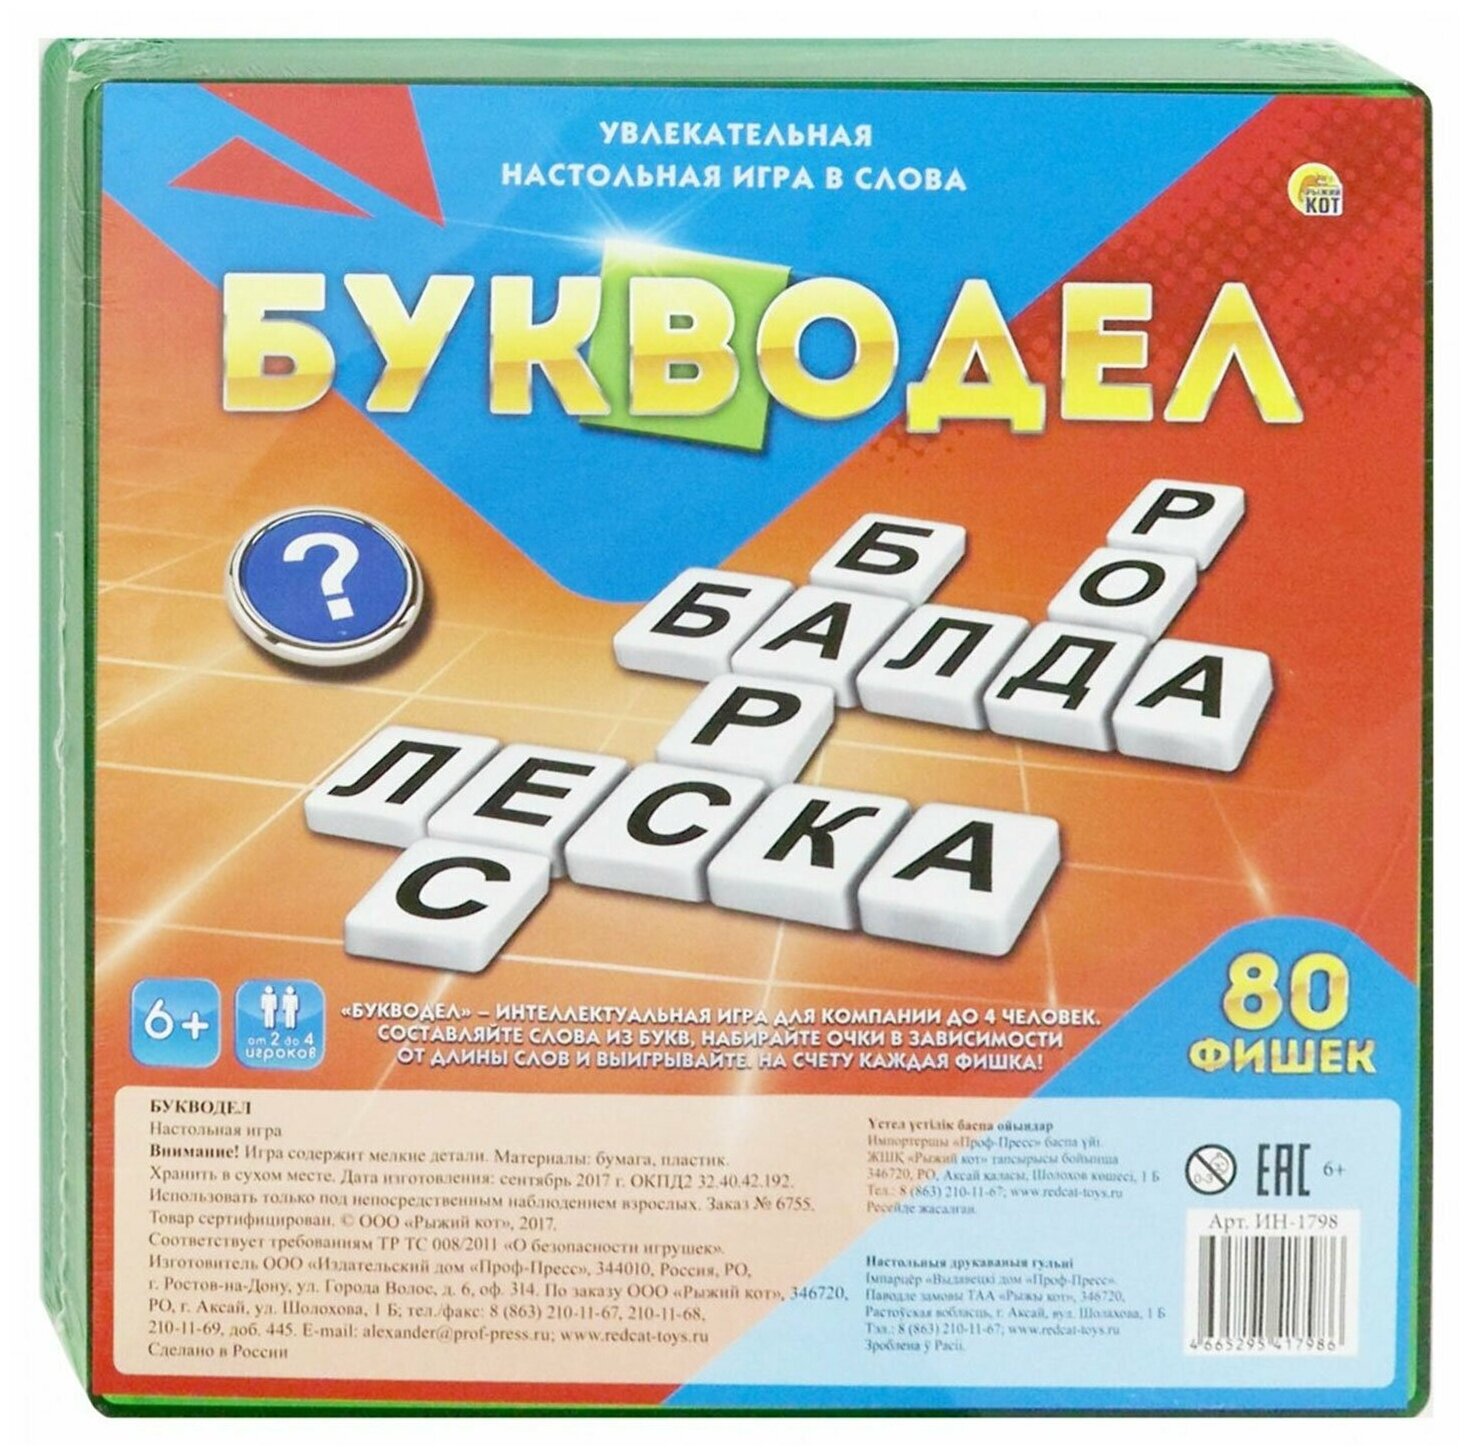 Игра настольная "Букводел", игровое поле, 80 пластиковых фишек, инструкция, рыжий КОТ, ИН-1798 - 1 шт.